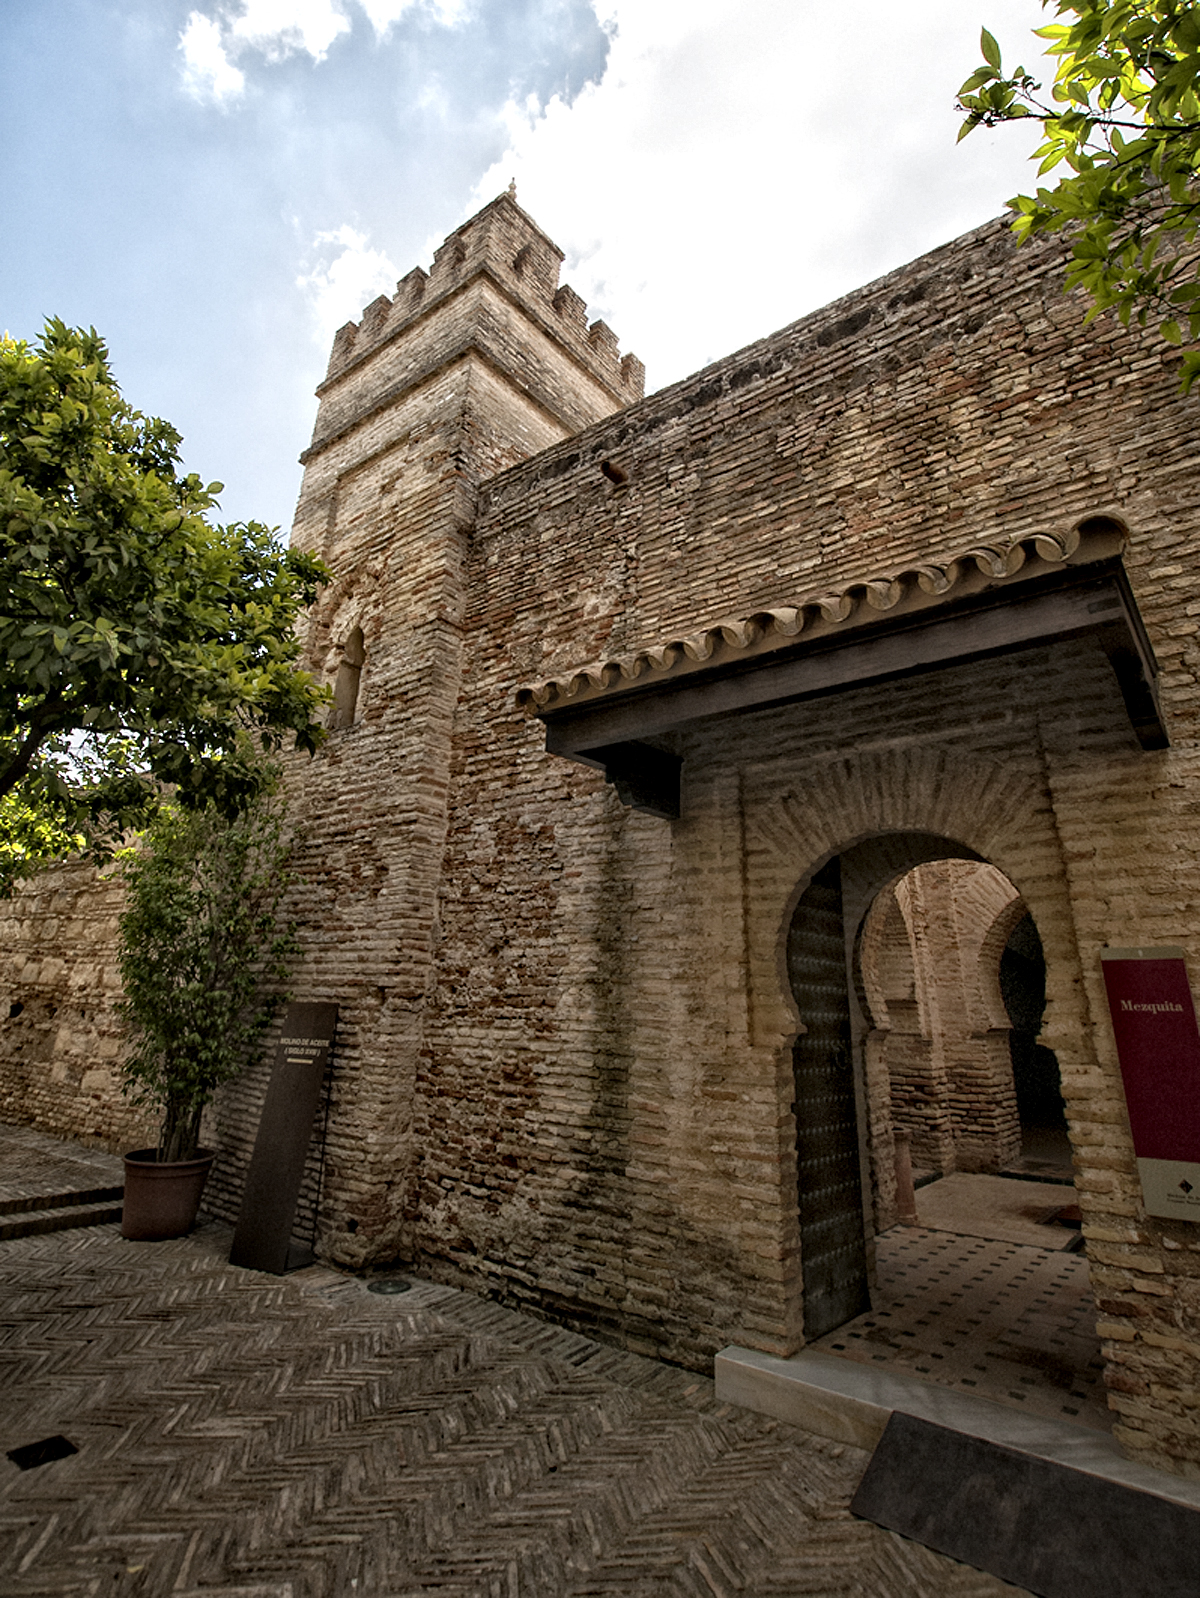 Alminar y entrada a la mezquita. Foto cedida por Juan Sánchez Ortega - Sortega Fotografía